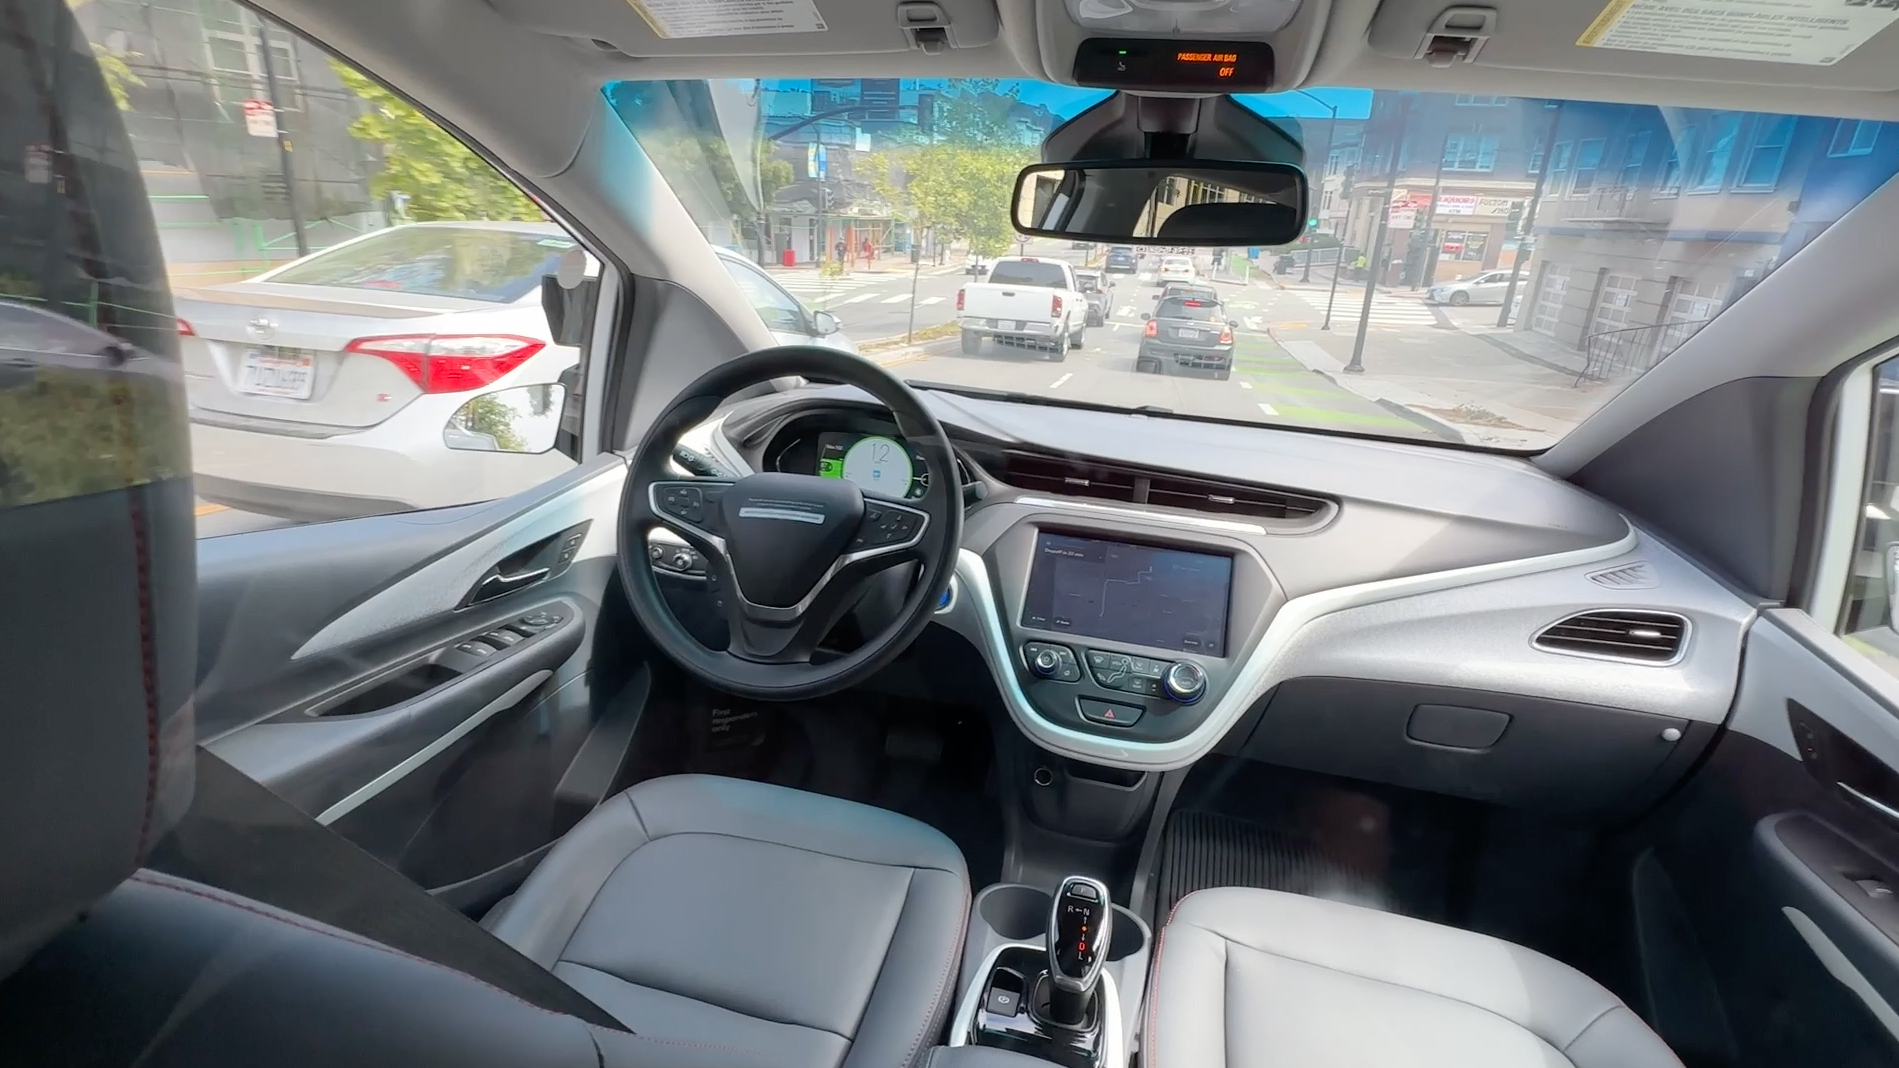 Driverless car companies seek expansion in SF despite worries tech lacks safety guard rails